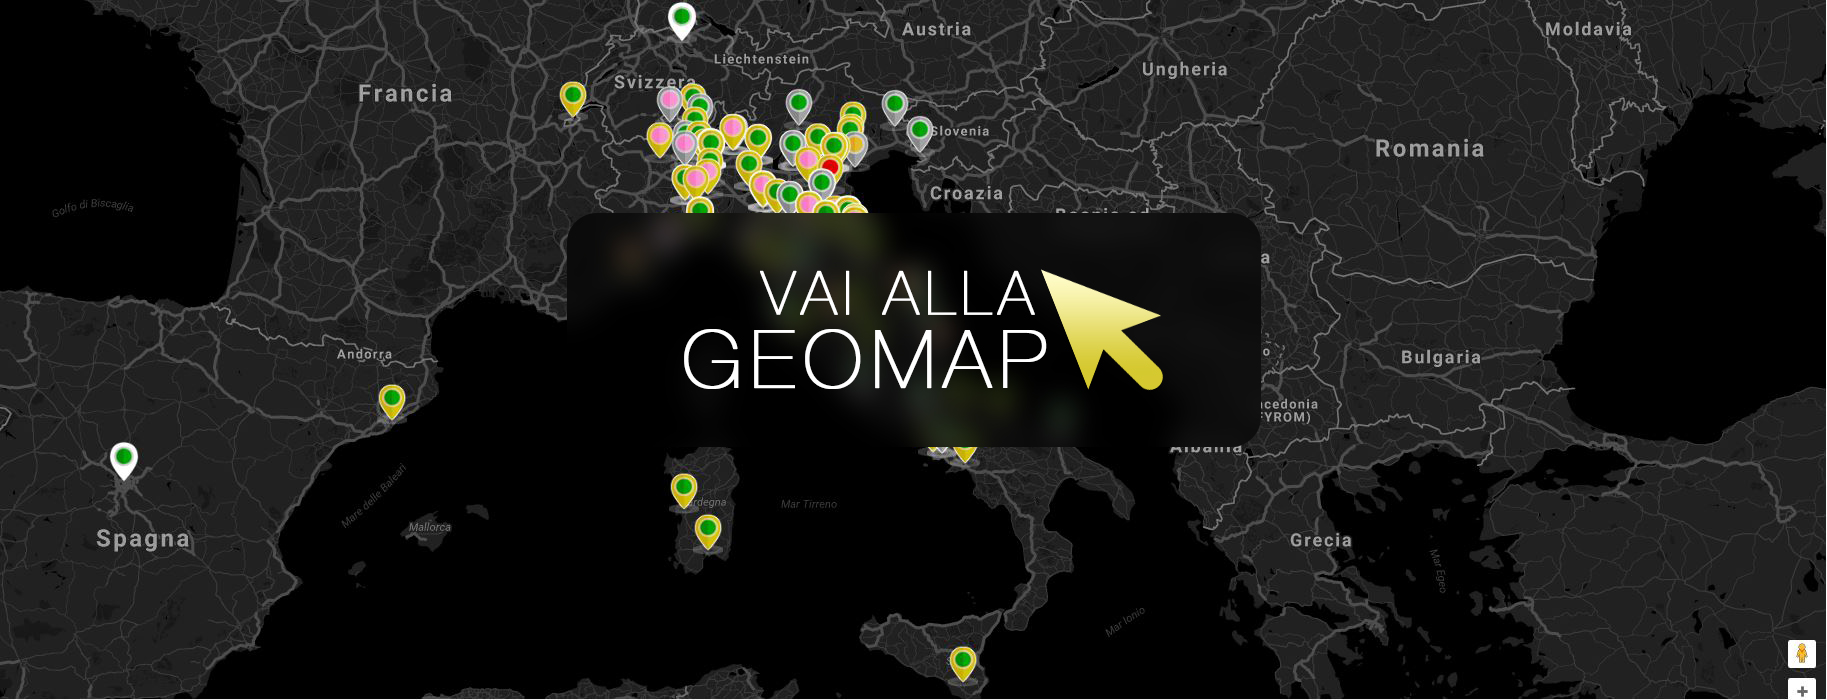 Guarda gli annunci a Empoli nella mappa intervattiva